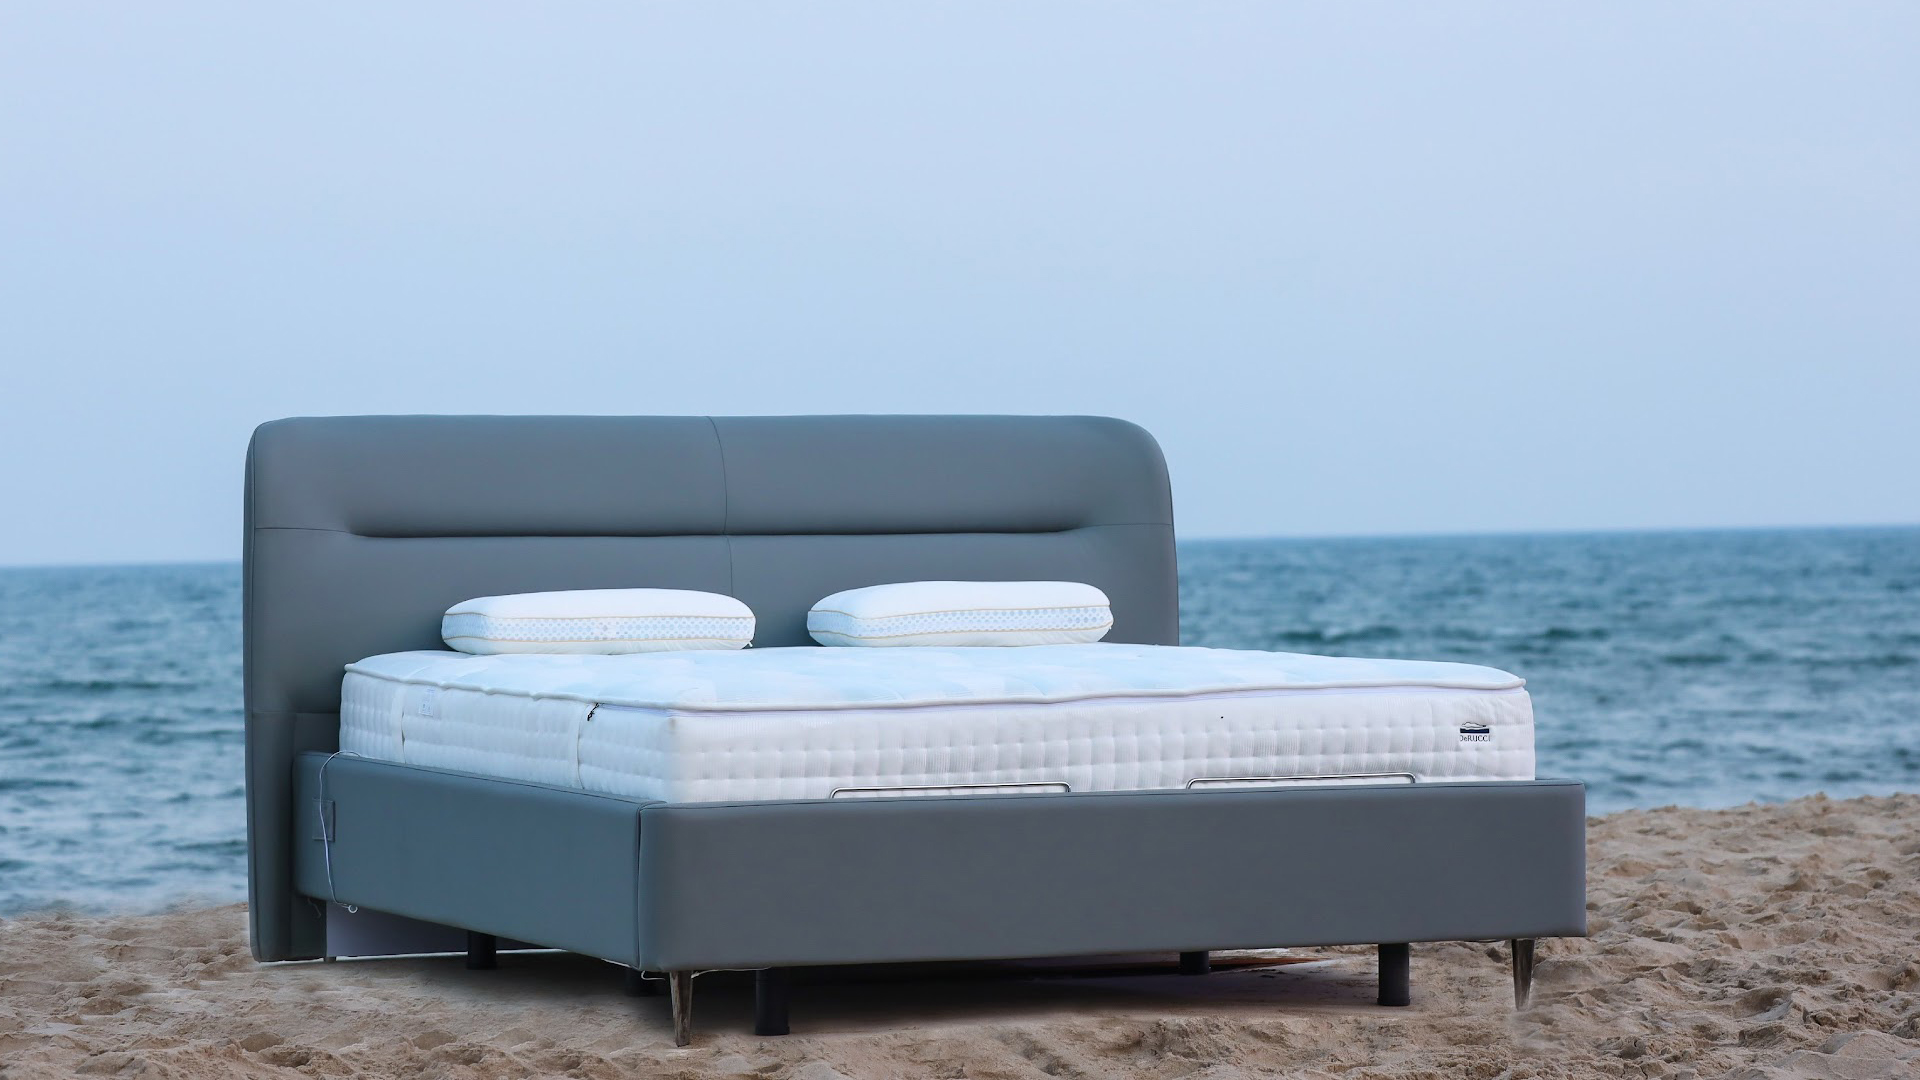 This smart mattress uses AI to adjust your sleep setup and warn users .